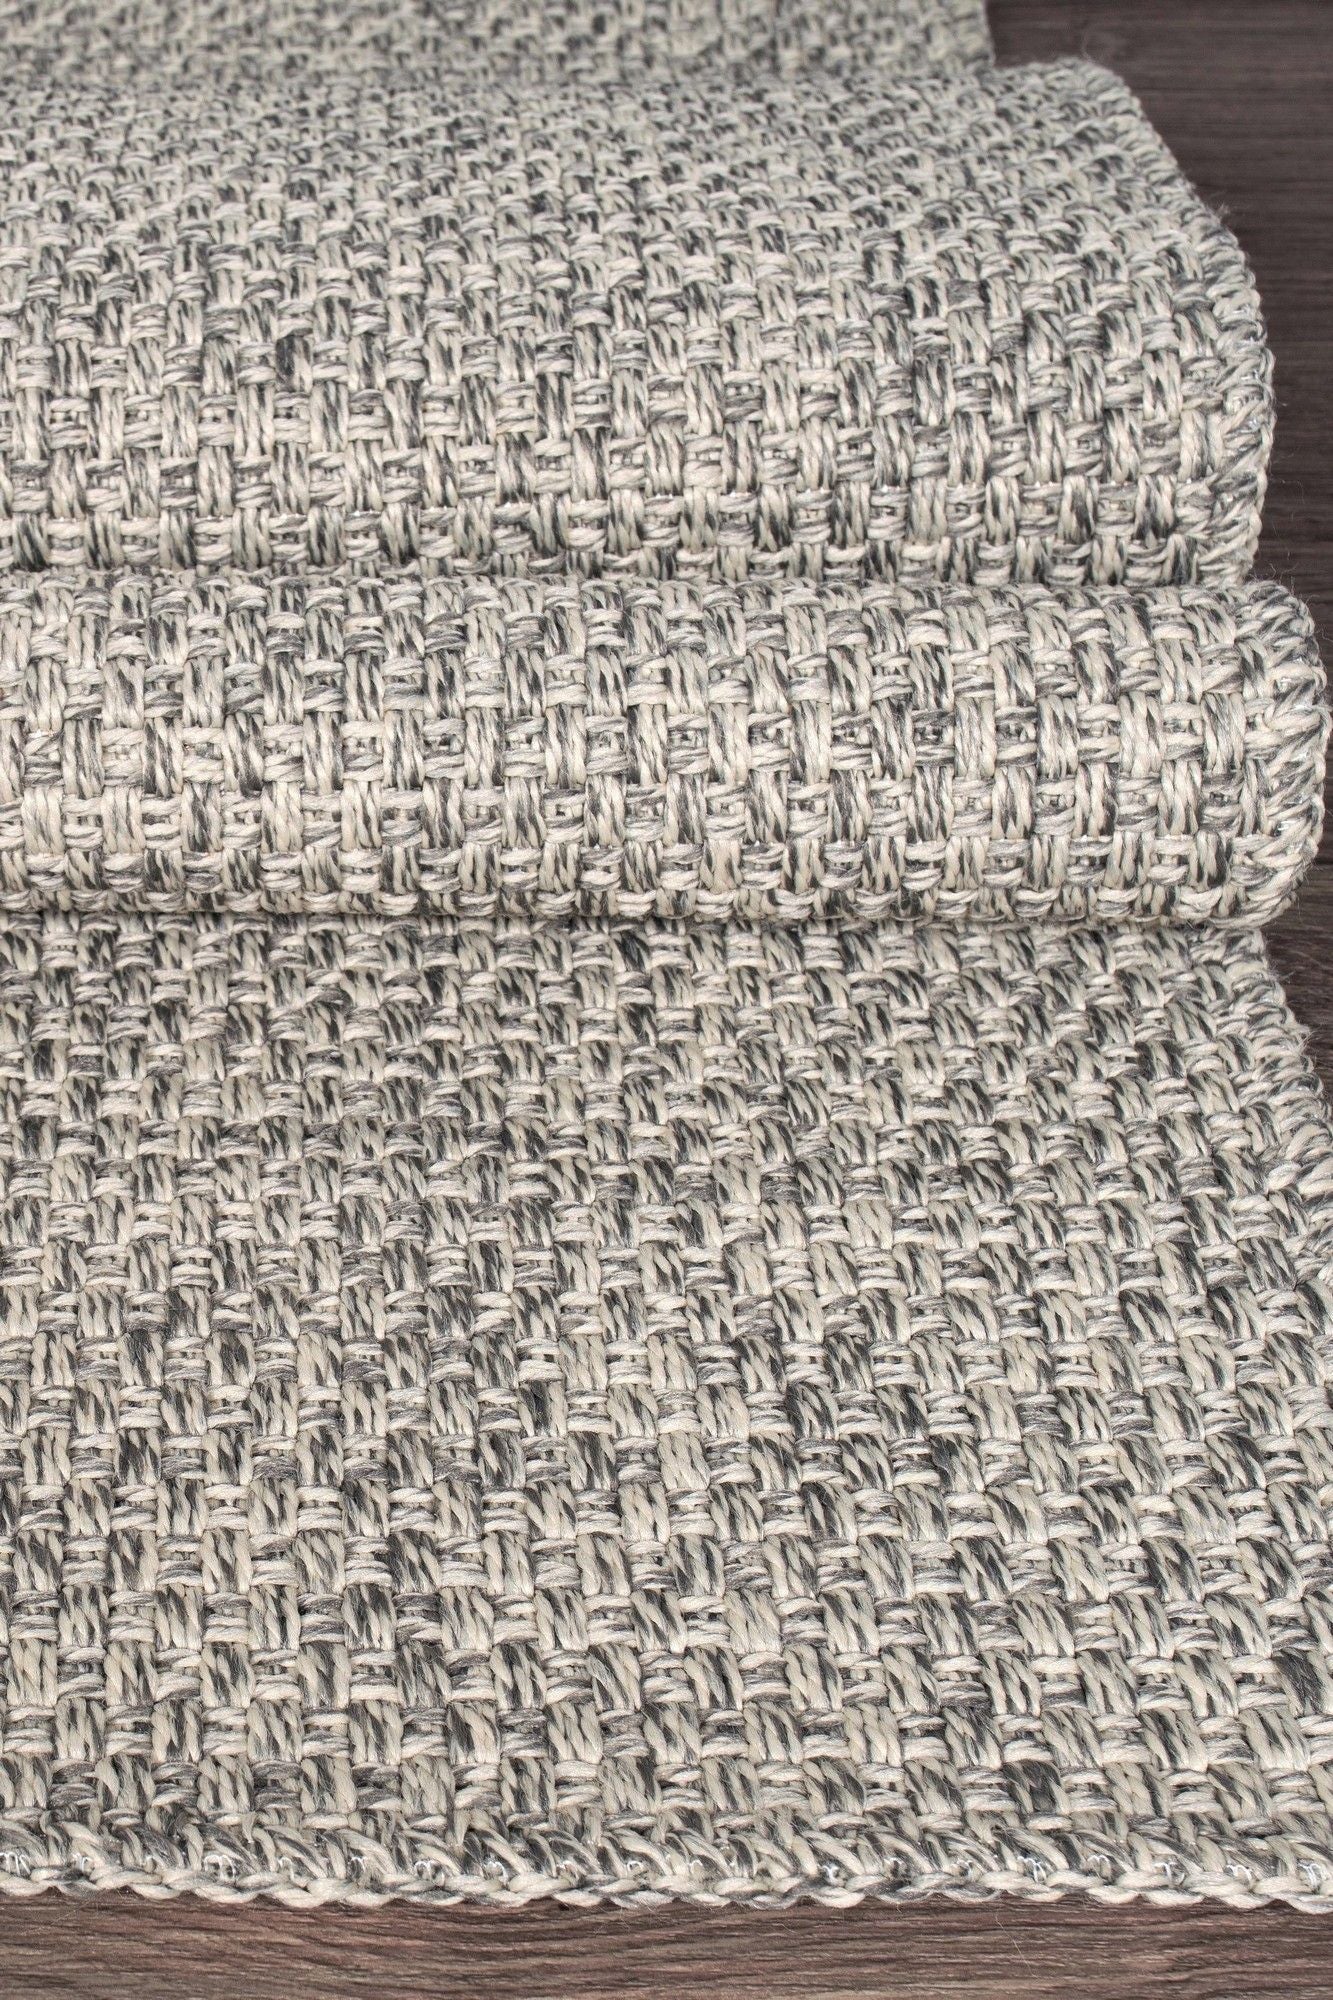 Rusticana 3103 - Hall Carpet (160 x 450)